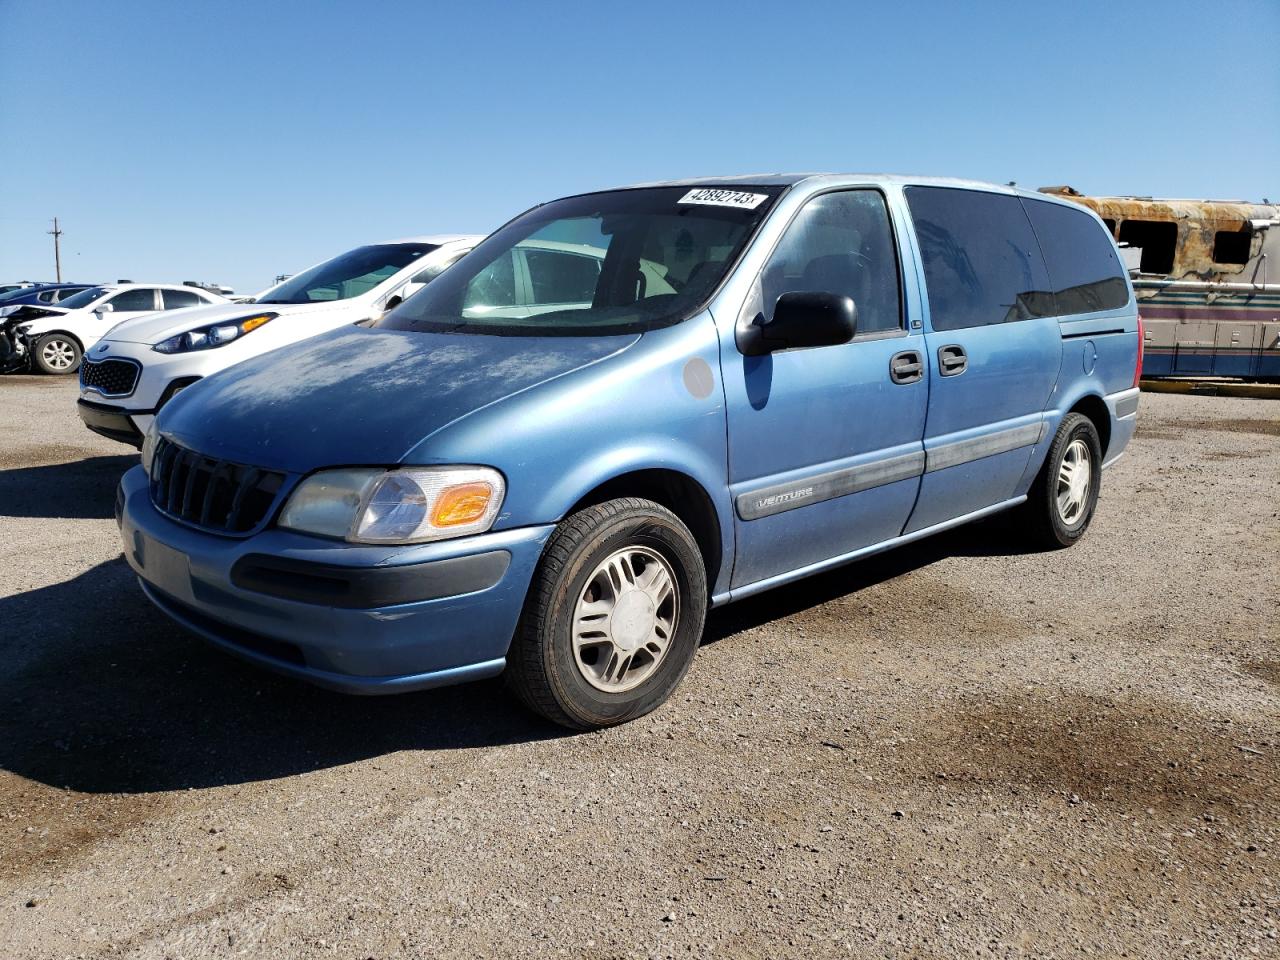 2000 Chevrolet Venture for sale at Copart Tucson, AZ Lot #42892*** |  SalvageReseller.com